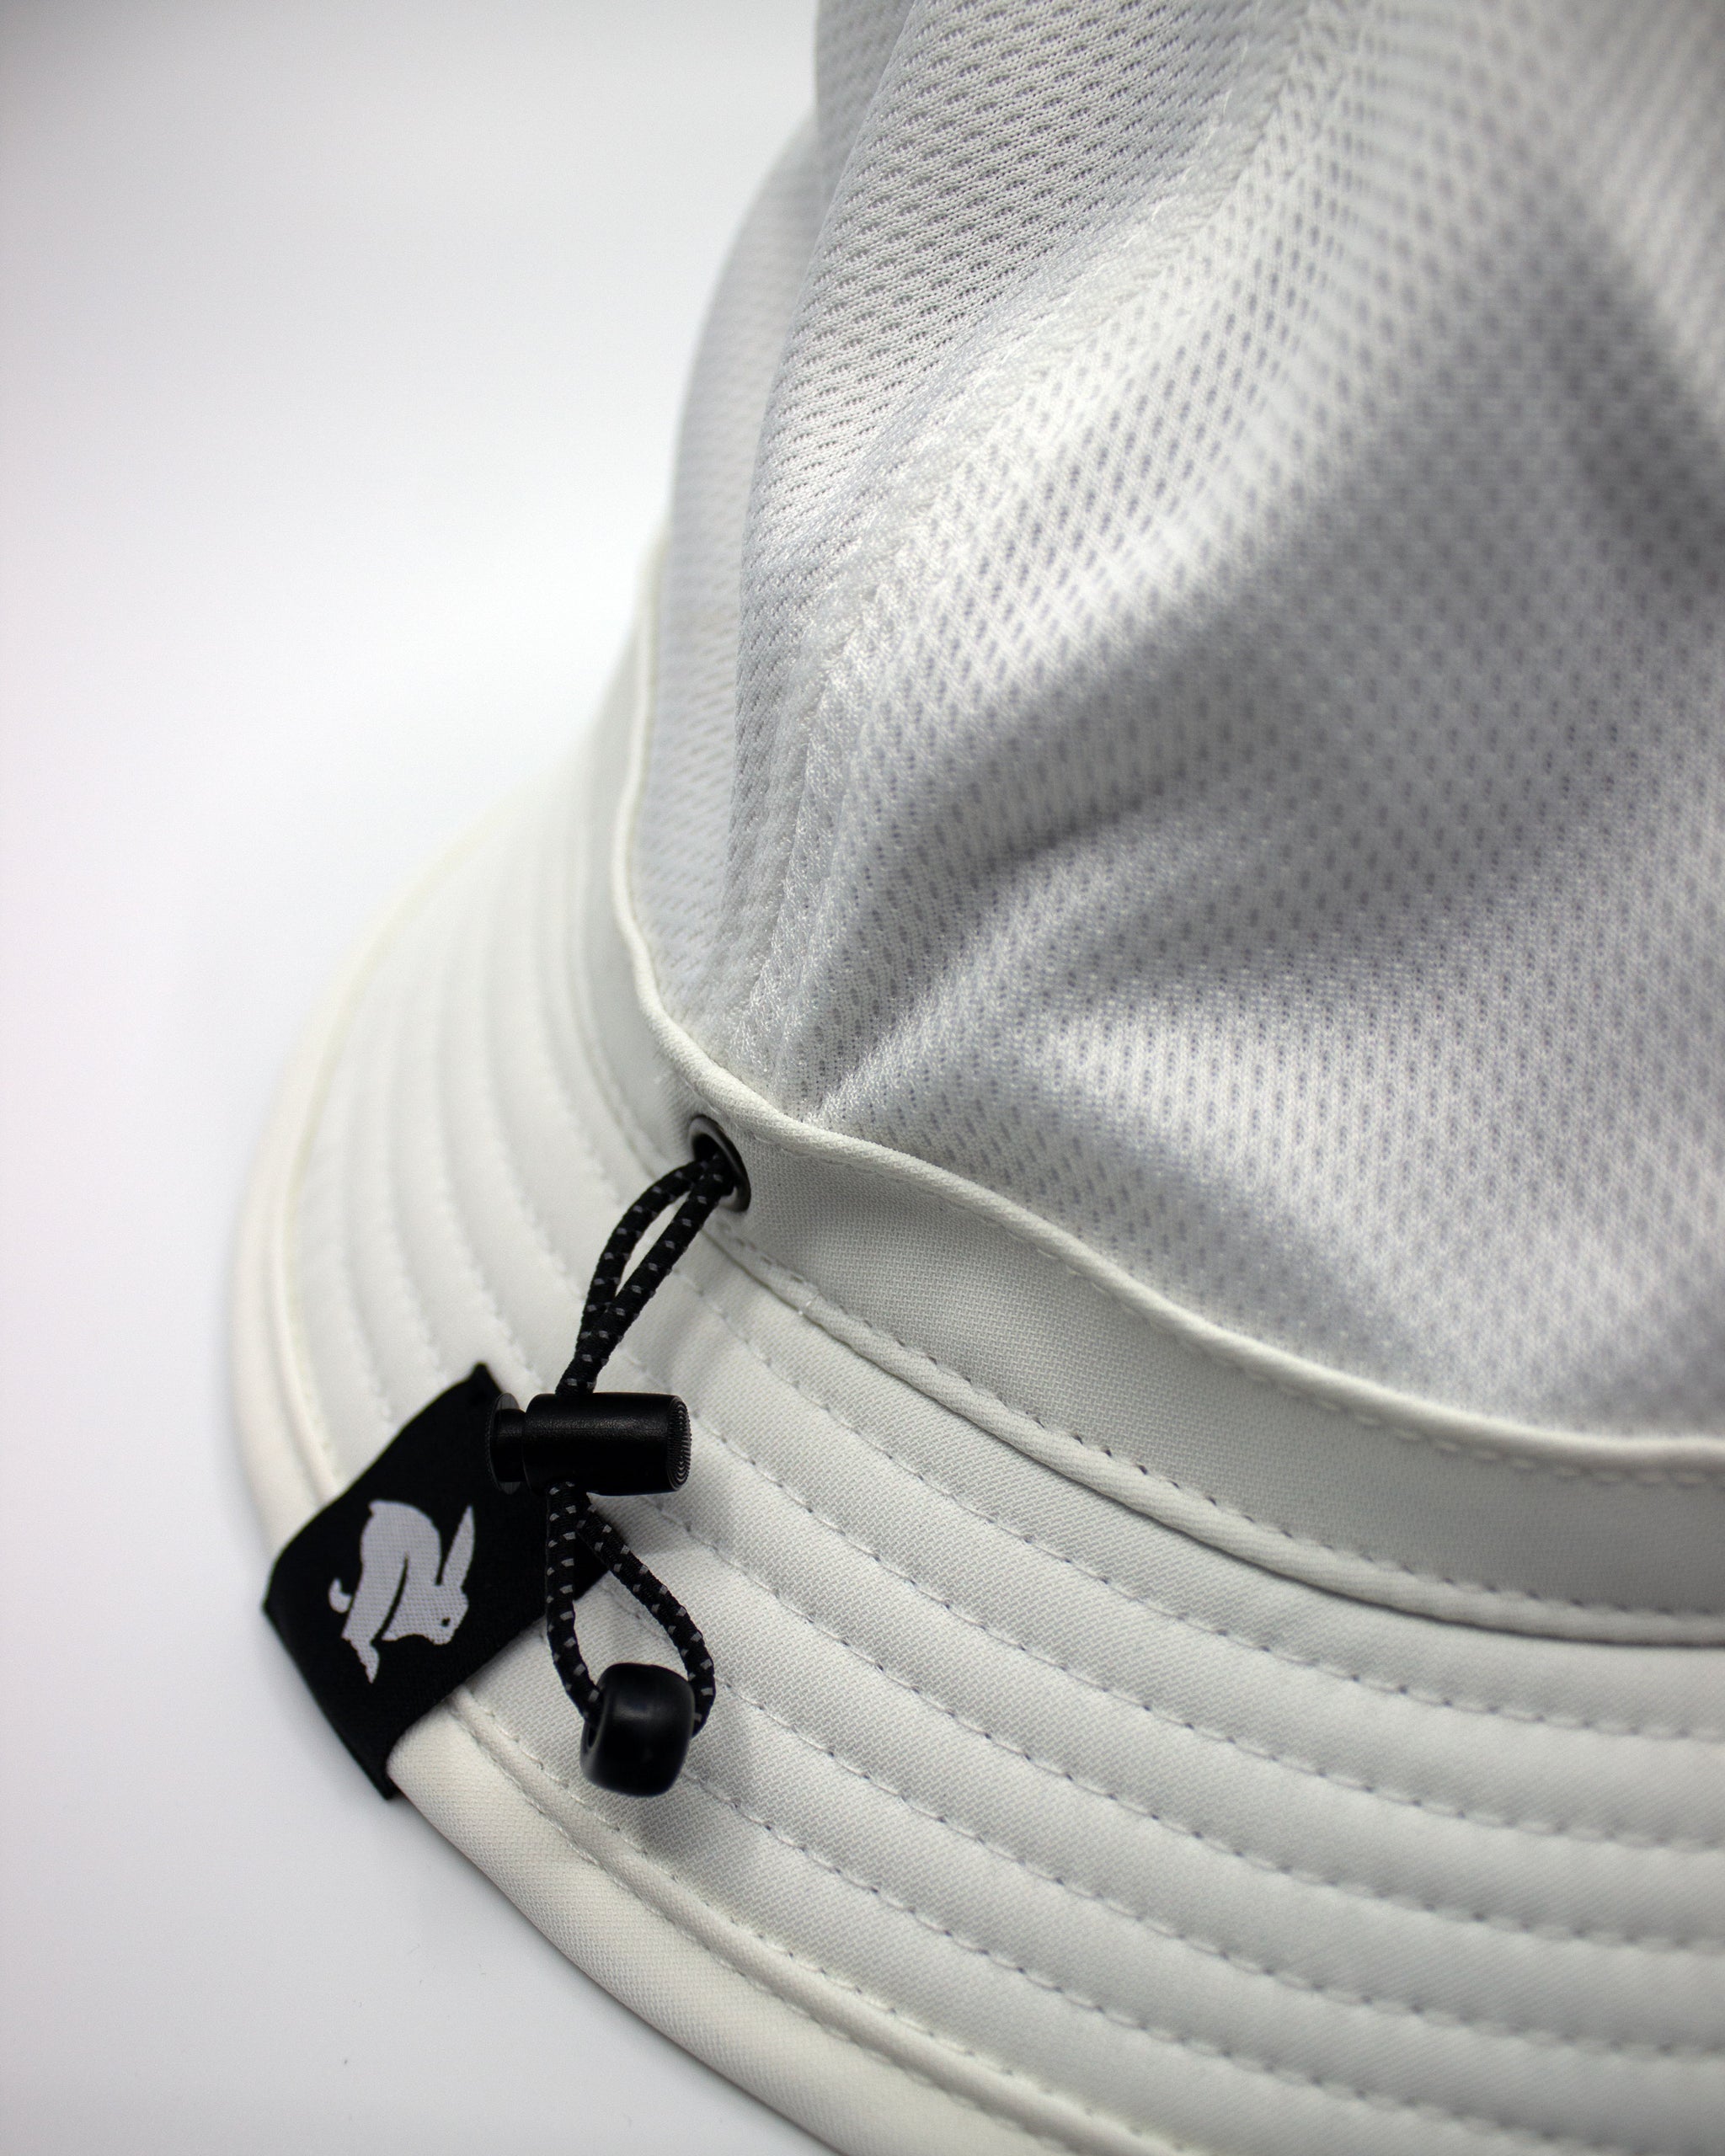 Beach Club Sun Hat UPF50+ | Women's Bucket Hat | Solbari USA White